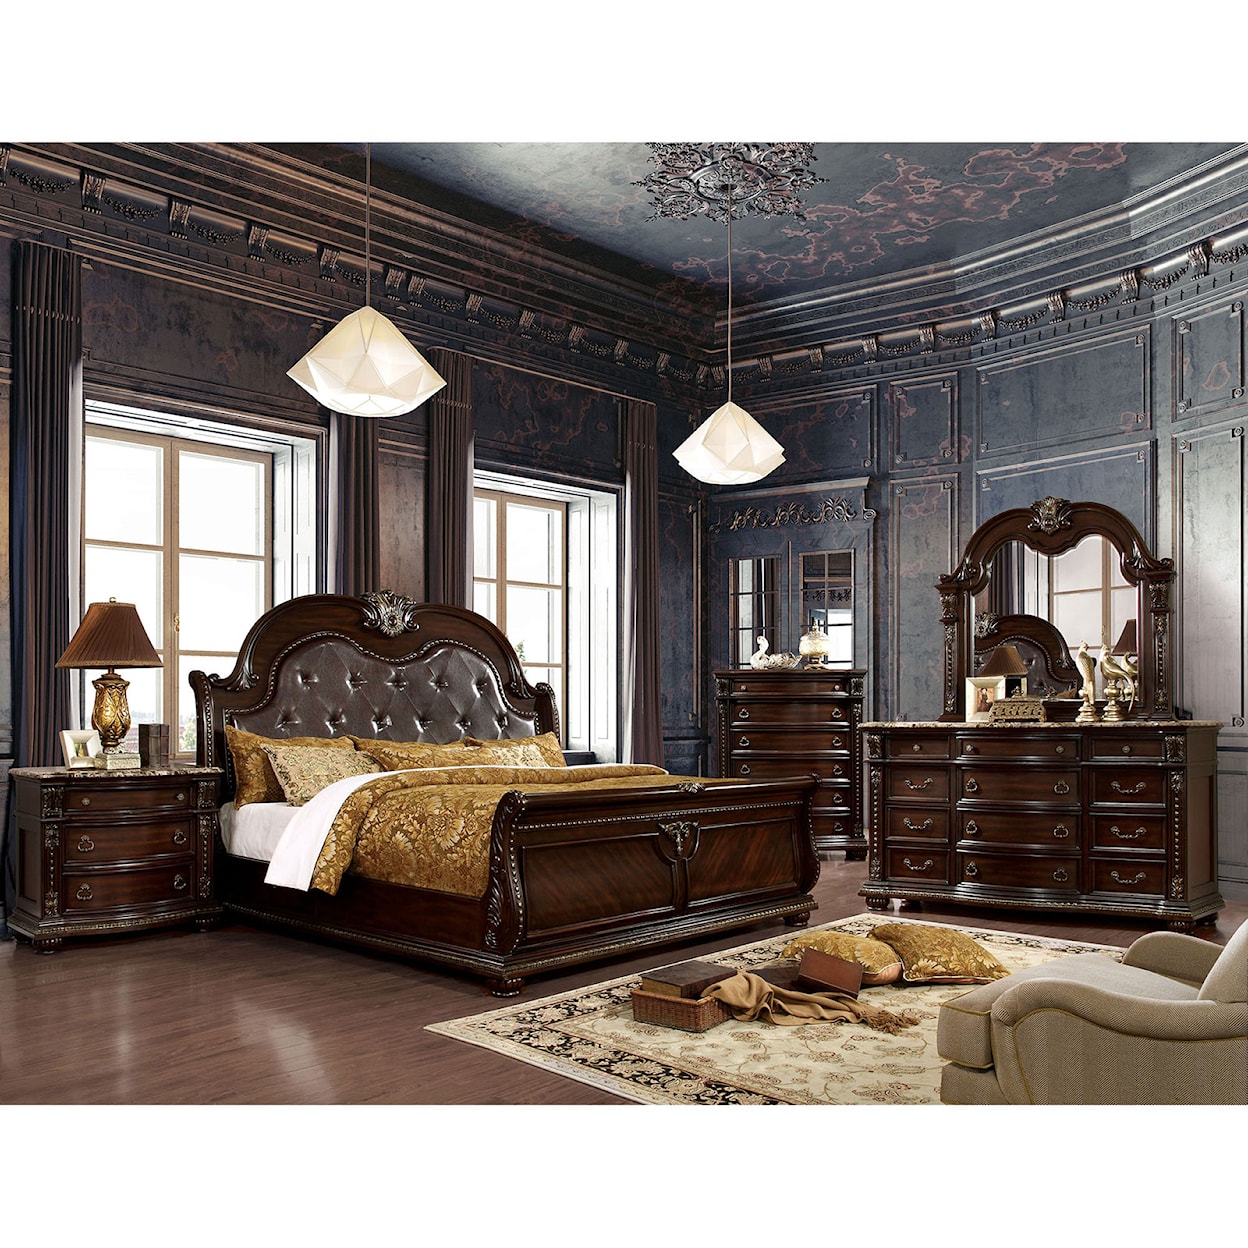 Furniture of America Fromberg 4-Piece Queen Bedroom Set